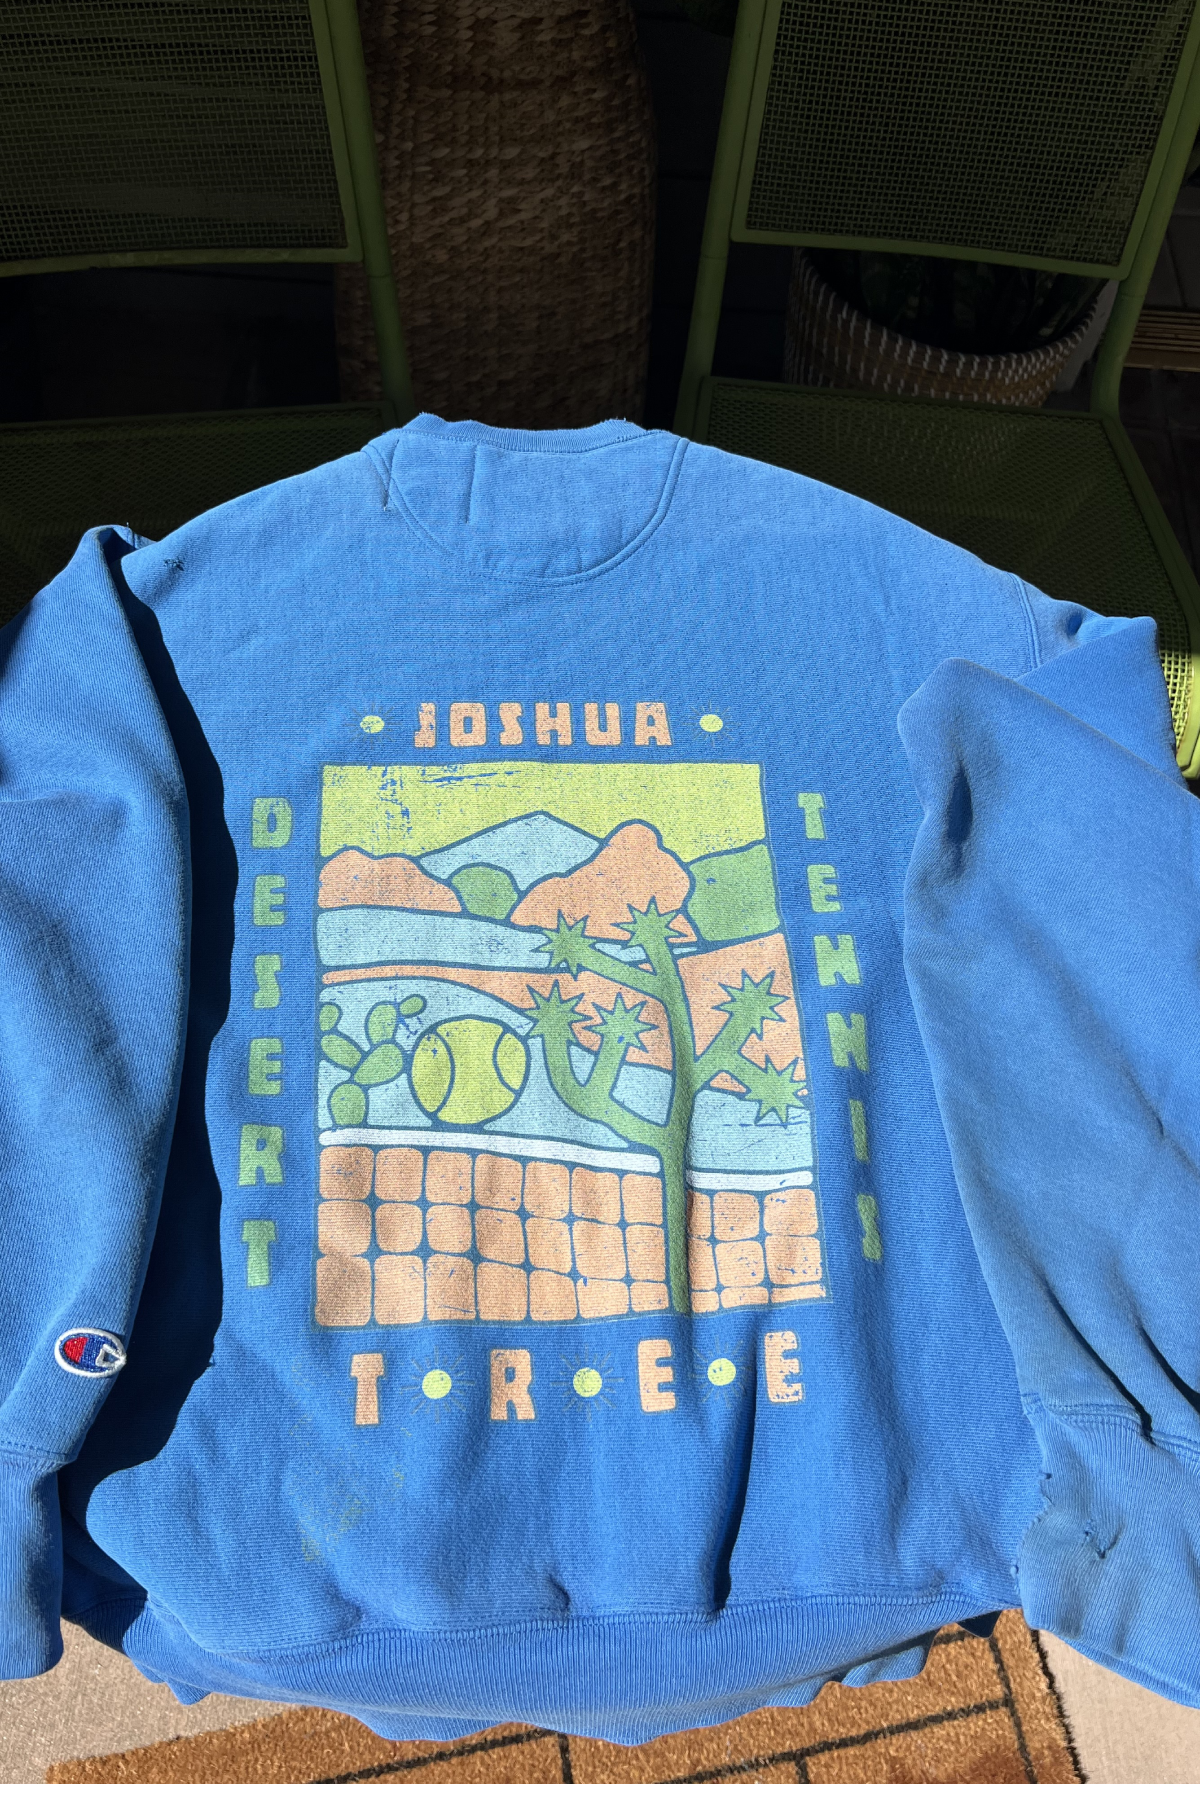 Joshua Tree Desert Tennis on Upcycled Vintage Sweatshirts & Tees